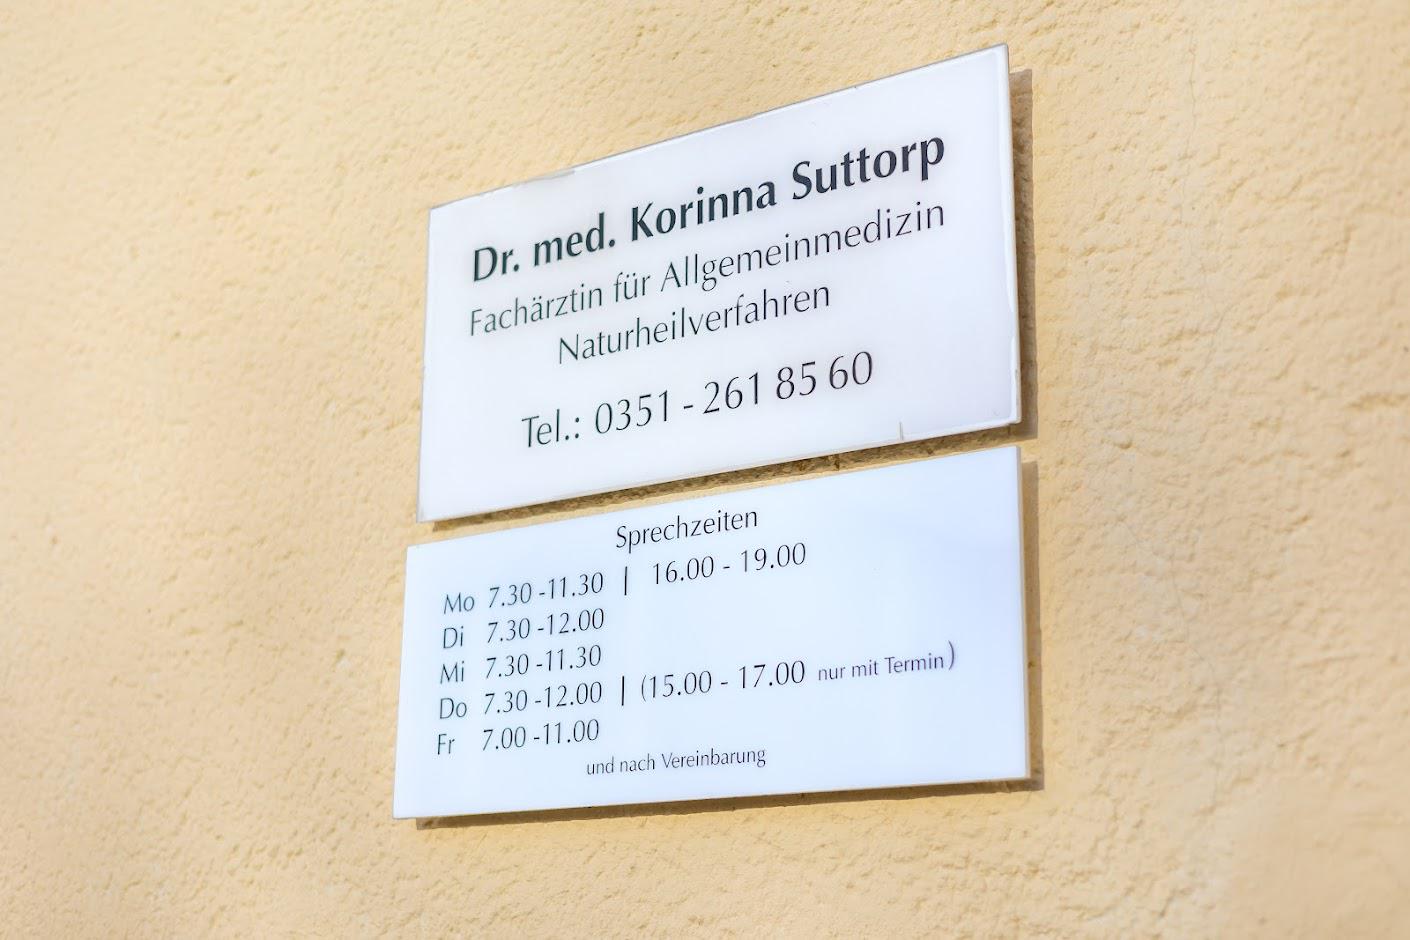 Hausarztpraxis Dr. Korinna Suttorp Fachärztin für Allgemeinmedizin u. Naturheilverfahren, Lohmener Str. 1 in Dresden